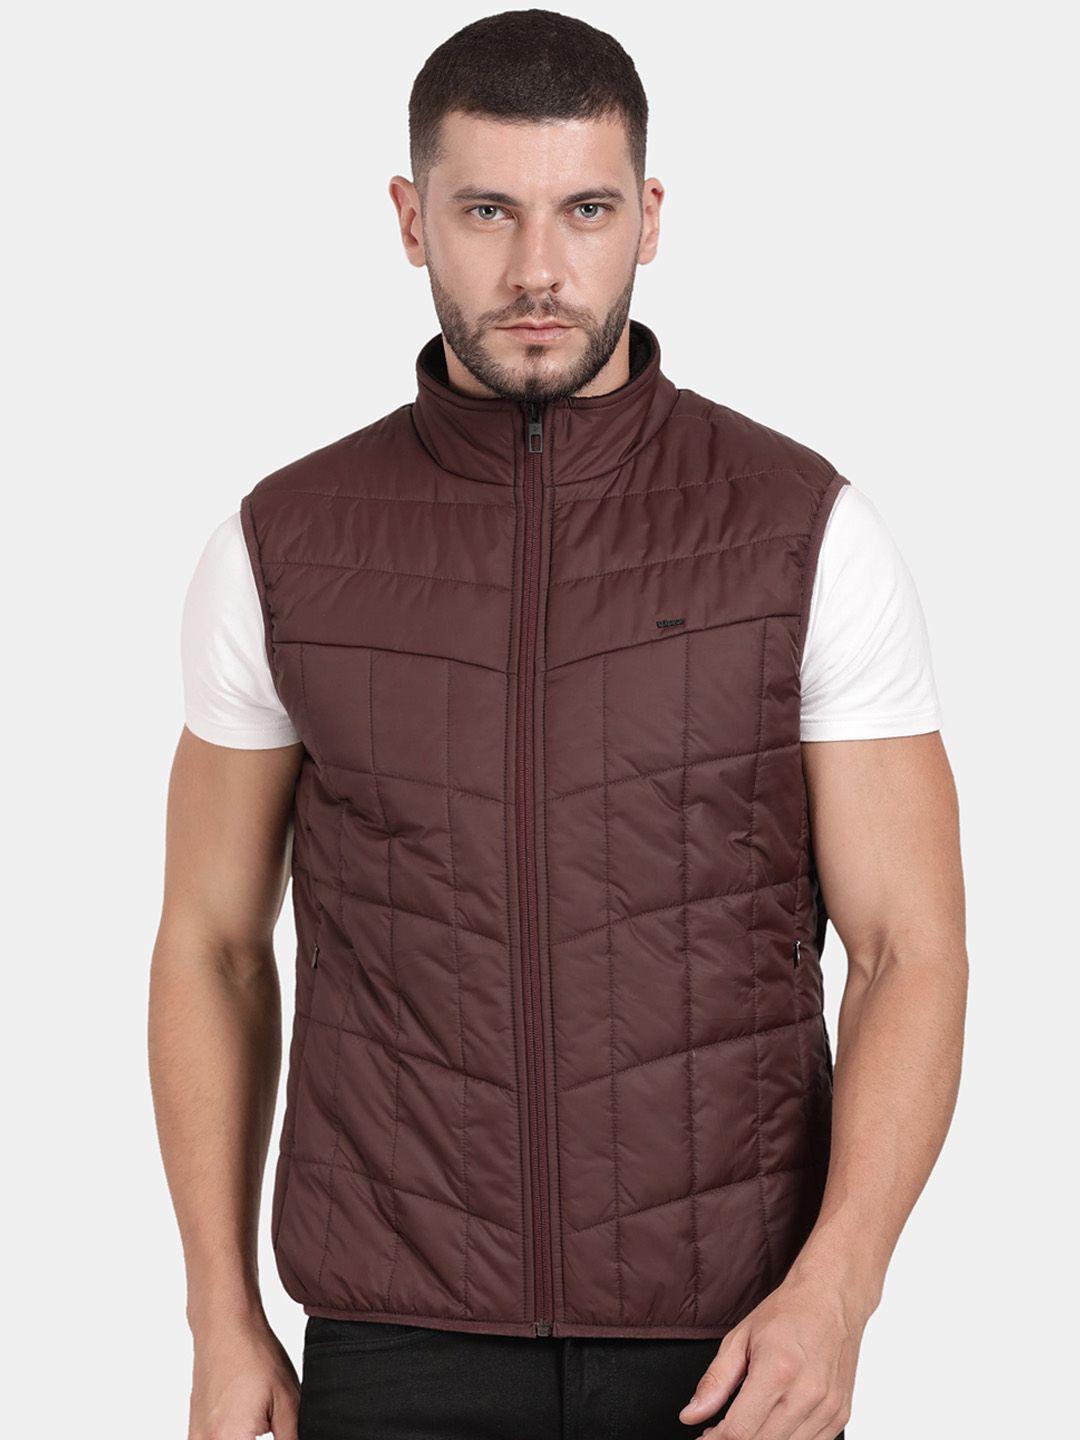 t-base-insulator-padded-jacket